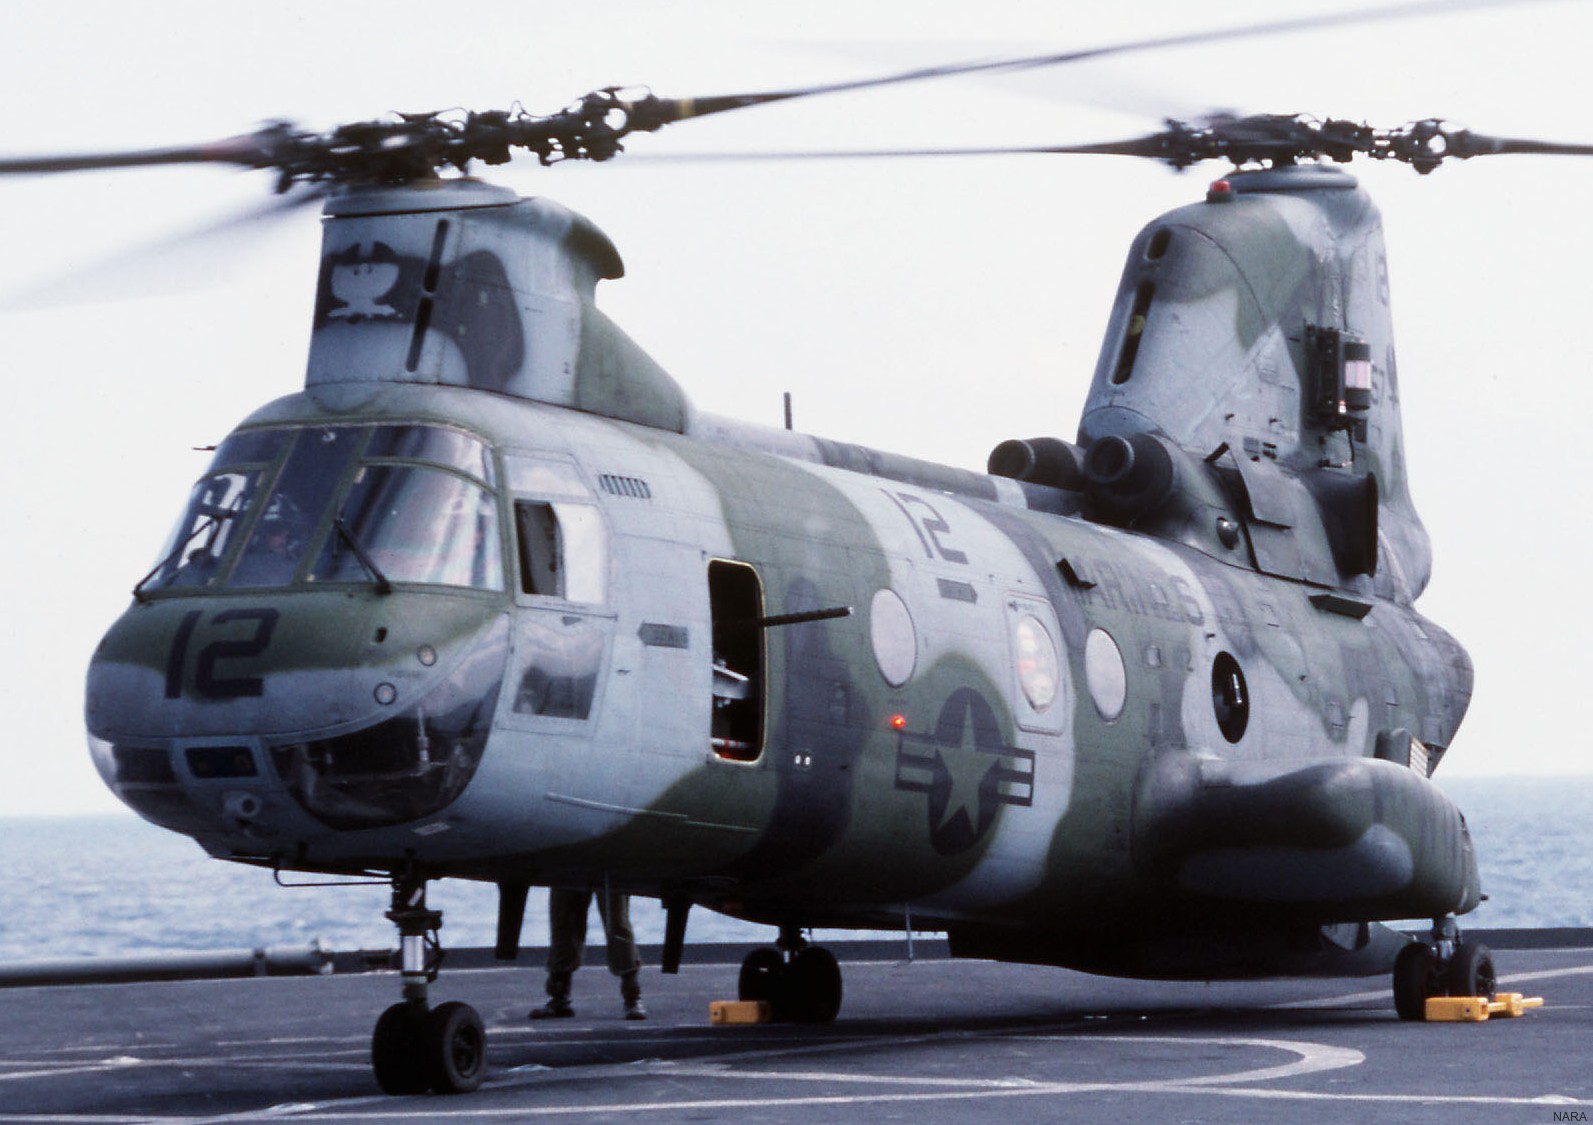 hmm-162 golden eagles marine medium helicopter squadron ch-46e sea knight usmc 38